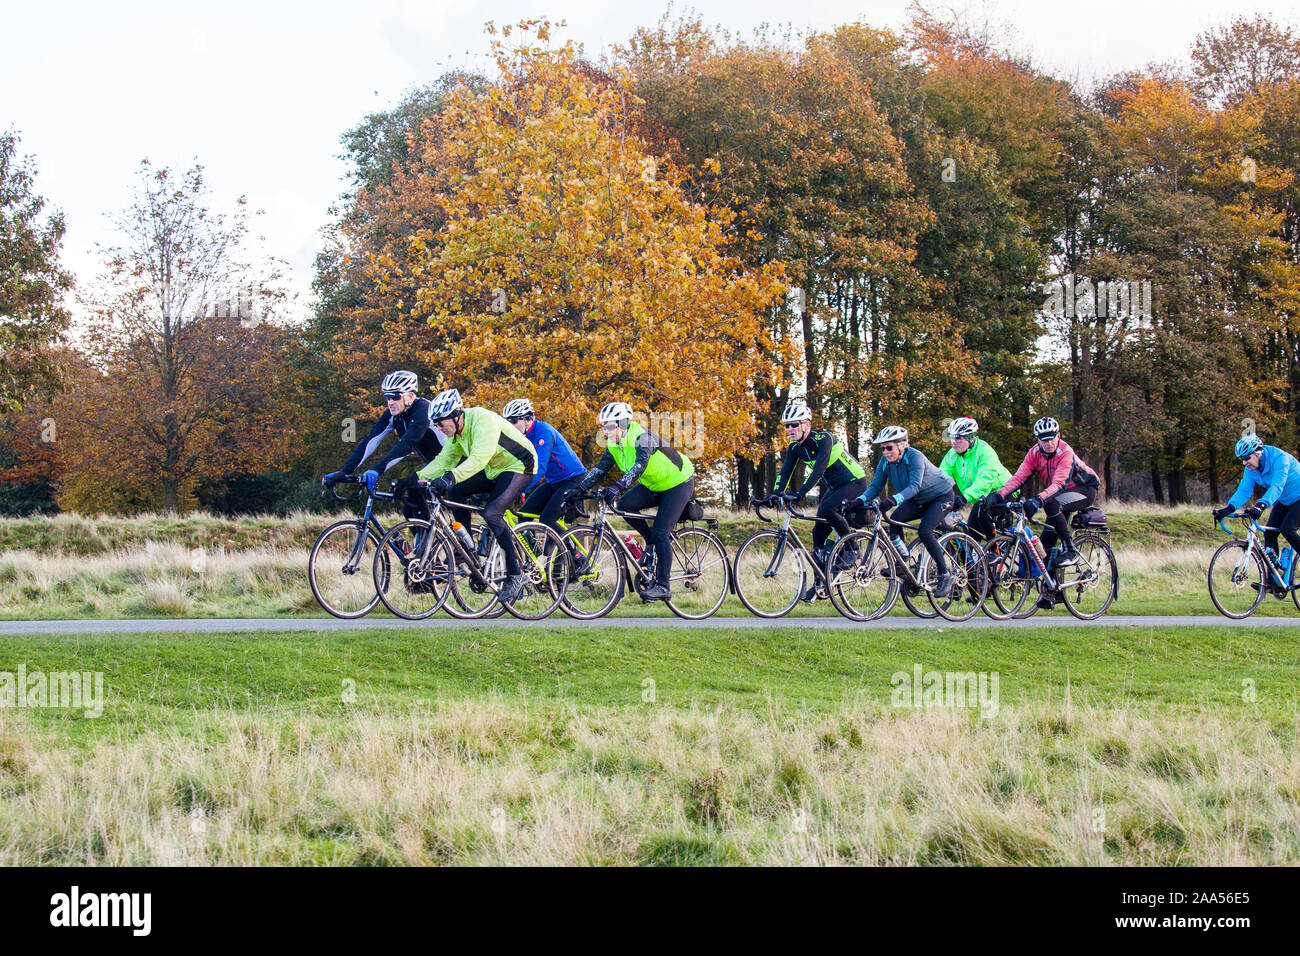 Ciclismo club di equitazione in National Trust Tatton Park Parco Knutsford cheshire england durante l'Autunno Foto Stock